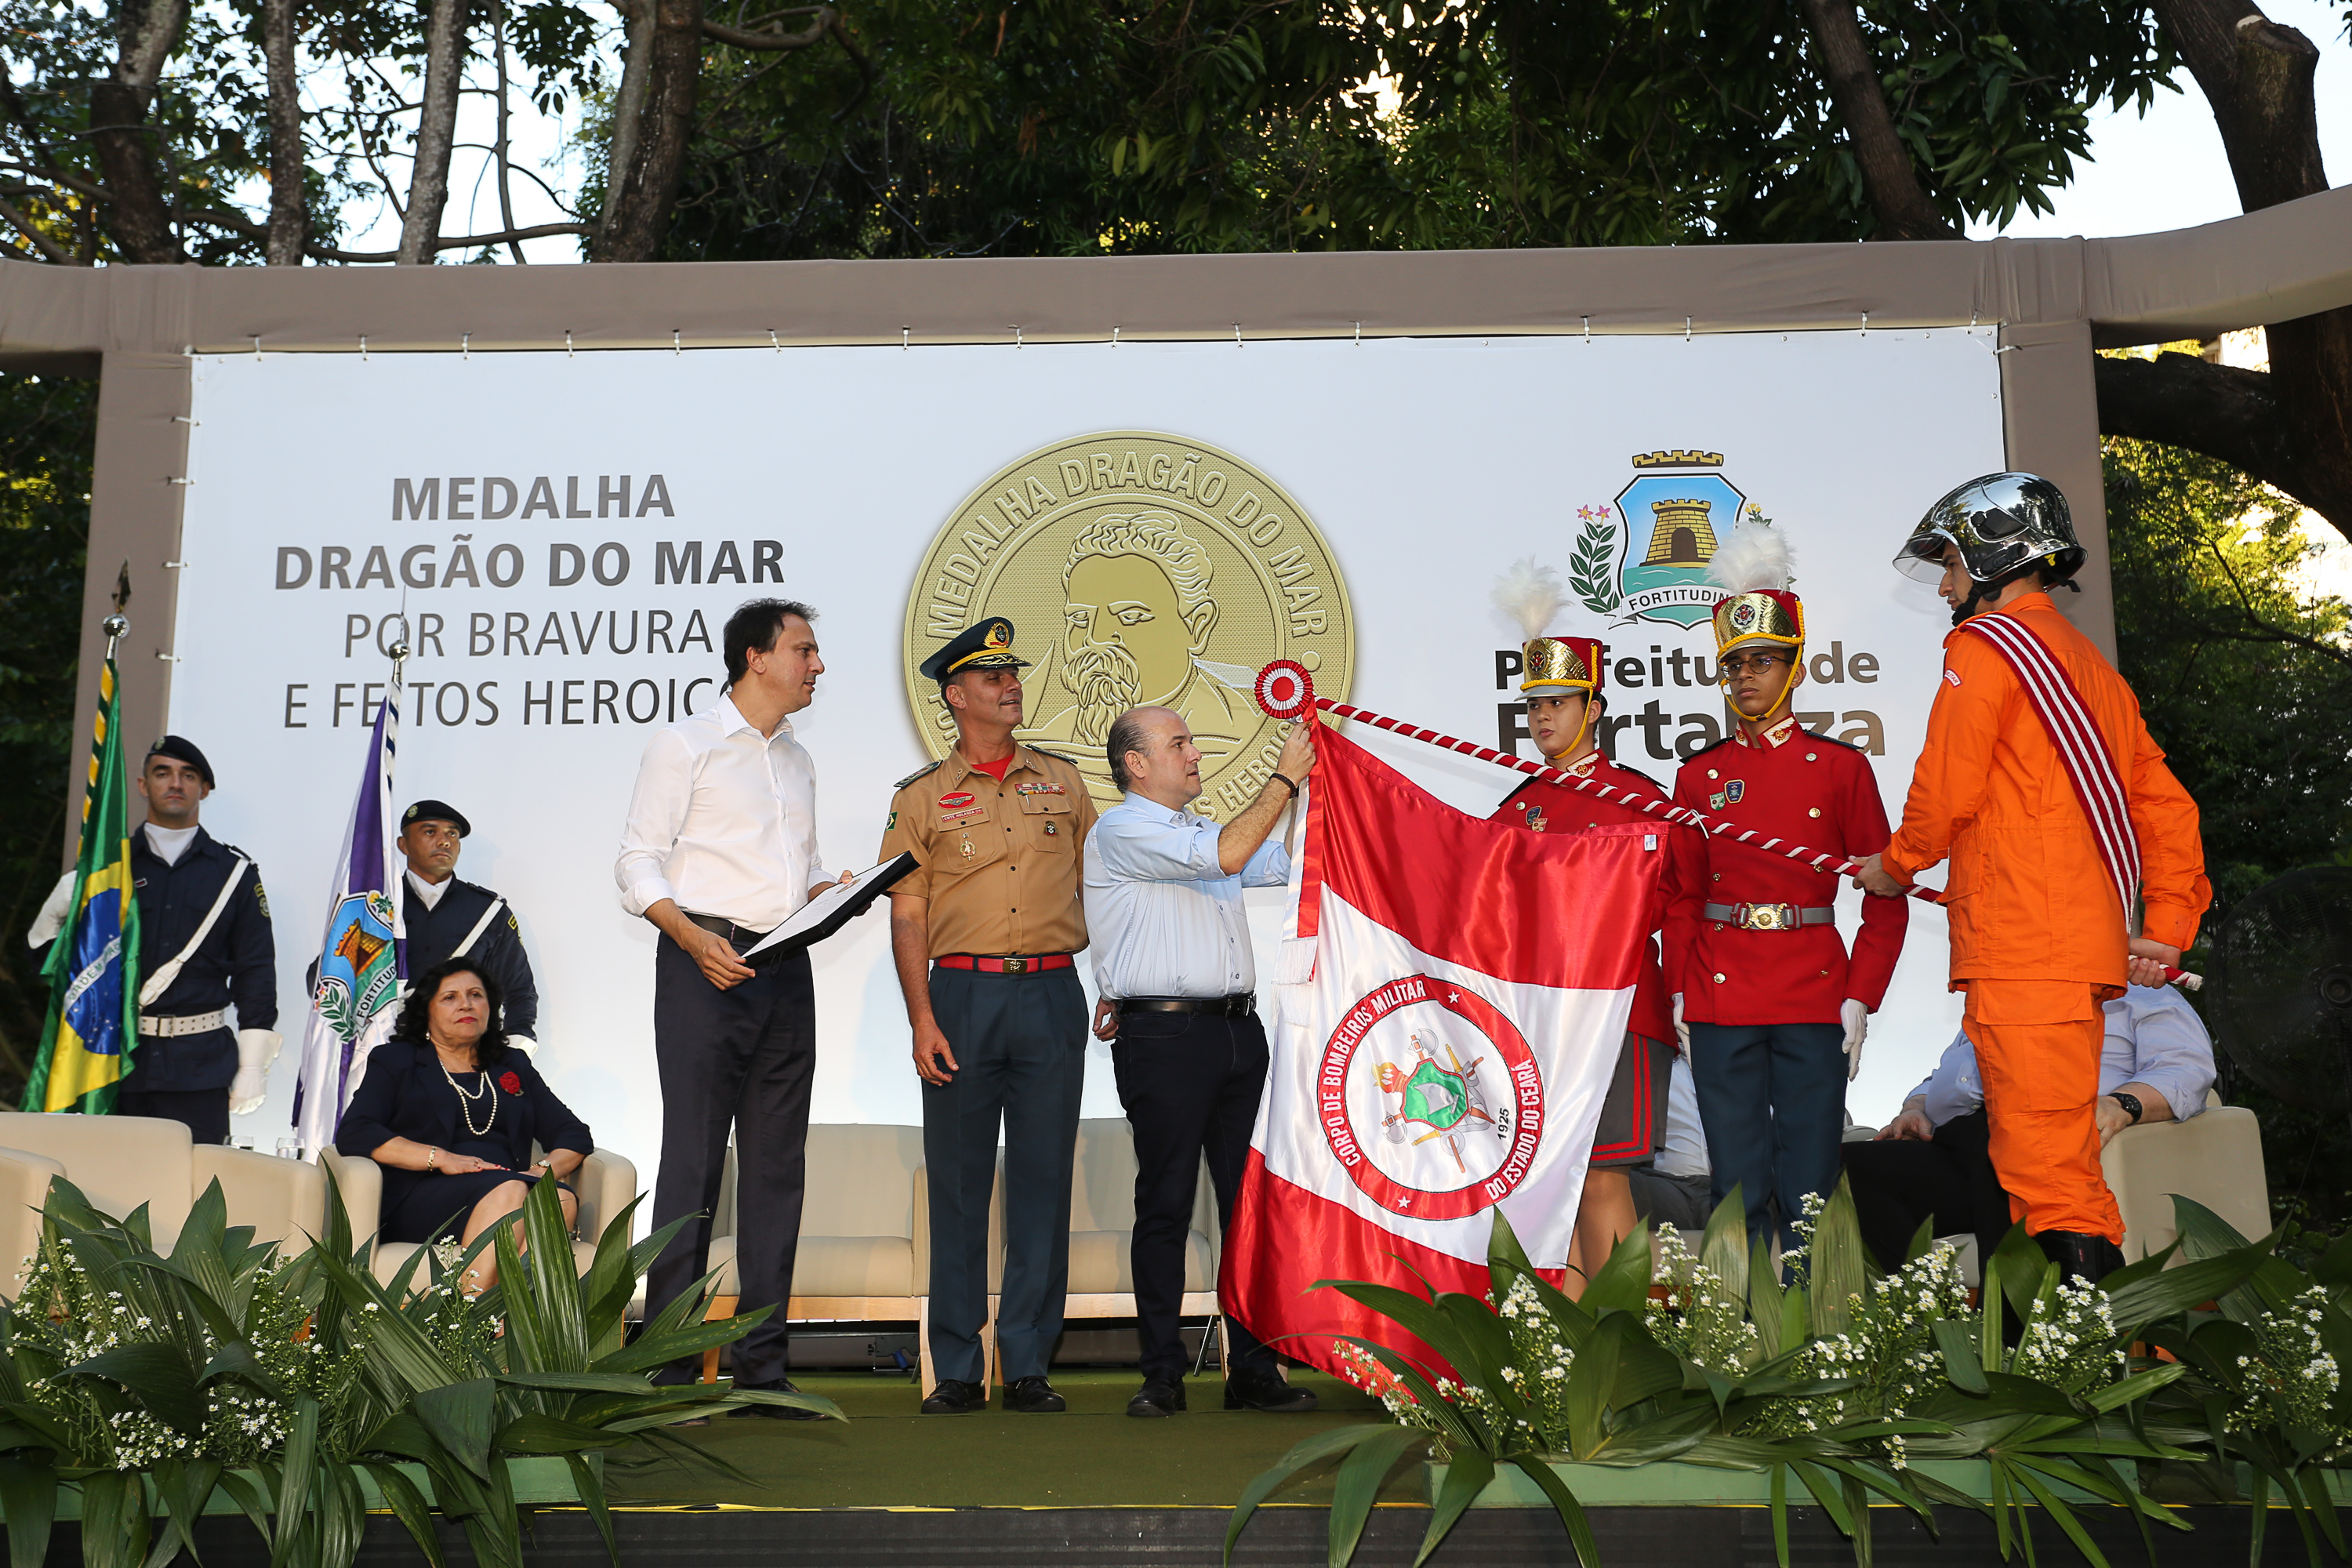 prefeito em cima de palco colocando medalha em bandeira com pessoas ao lado assistindo